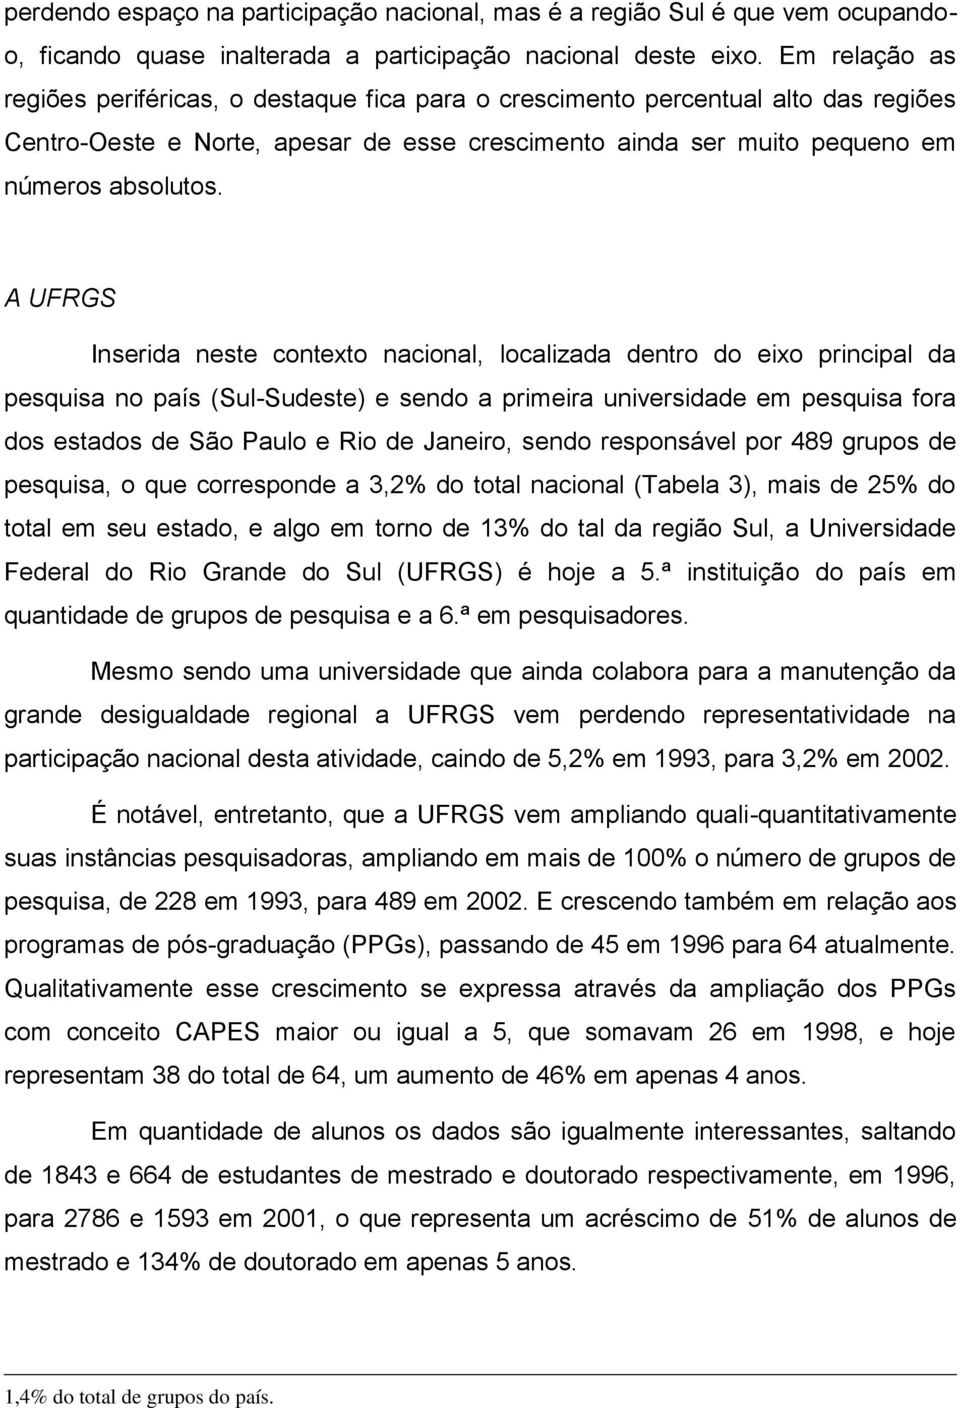 A UFRGS Inserida neste contexto nacional, localizada dentro do eixo principal da pesquisa no país (Sul-Sudeste) e sendo a primeira universidade em pesquisa fora dos estados de São Paulo e Rio de